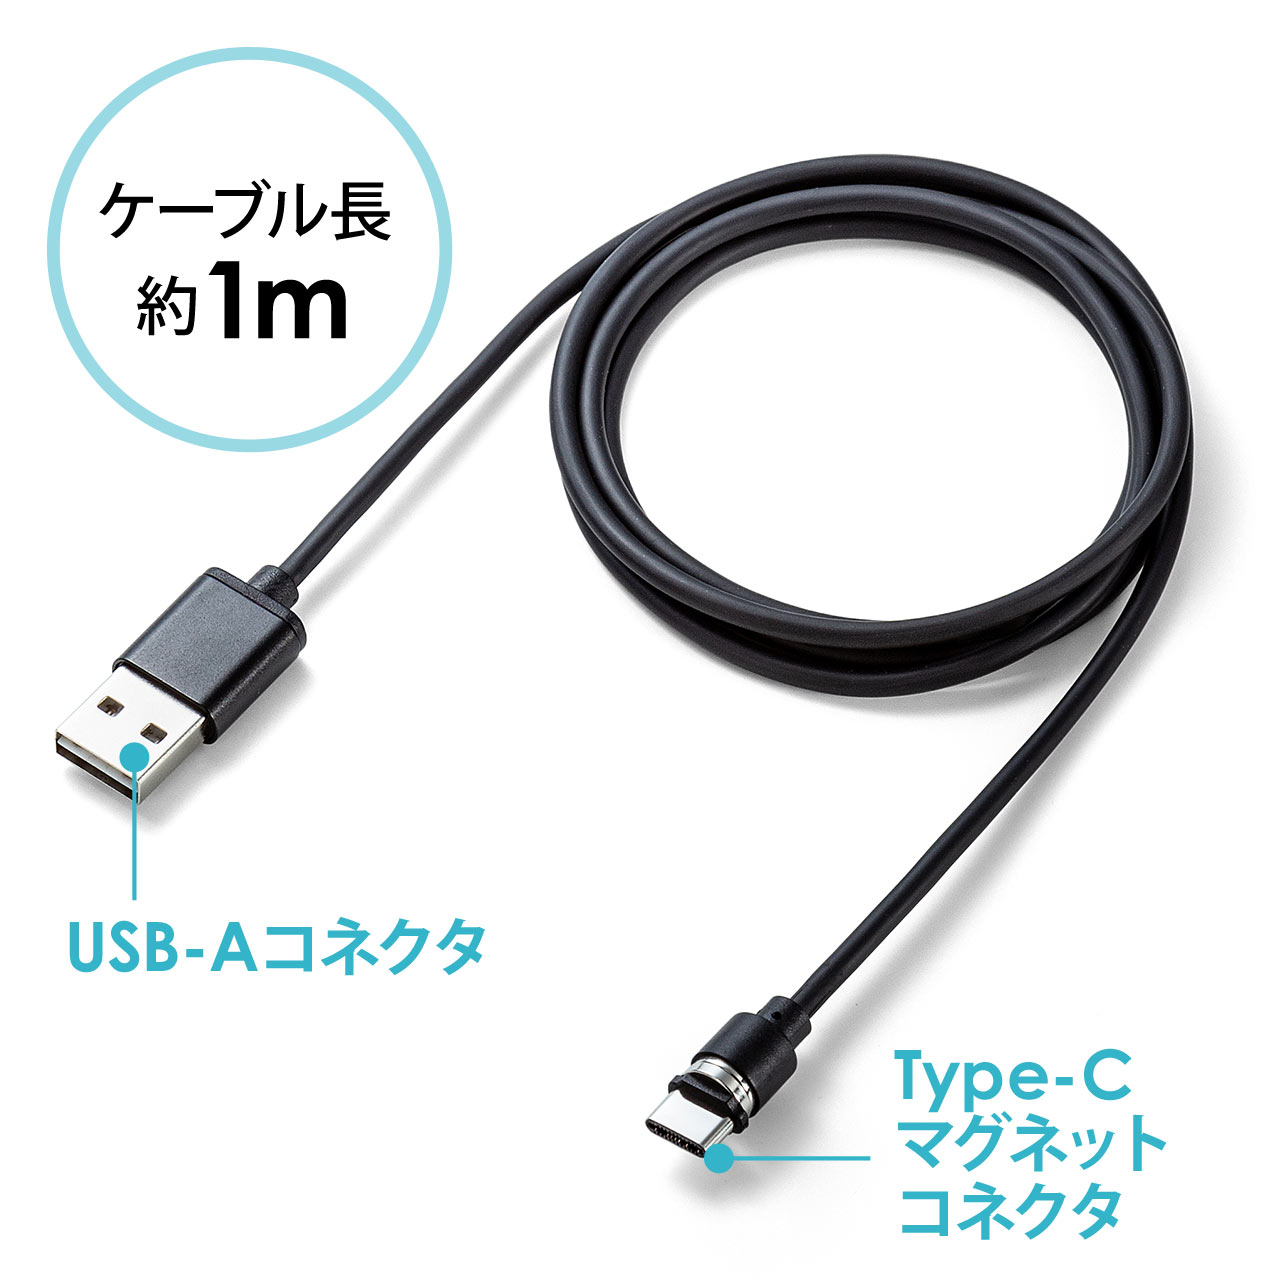 コネクタ両面対応マグネット着脱式USB Type-C充電ケーブル